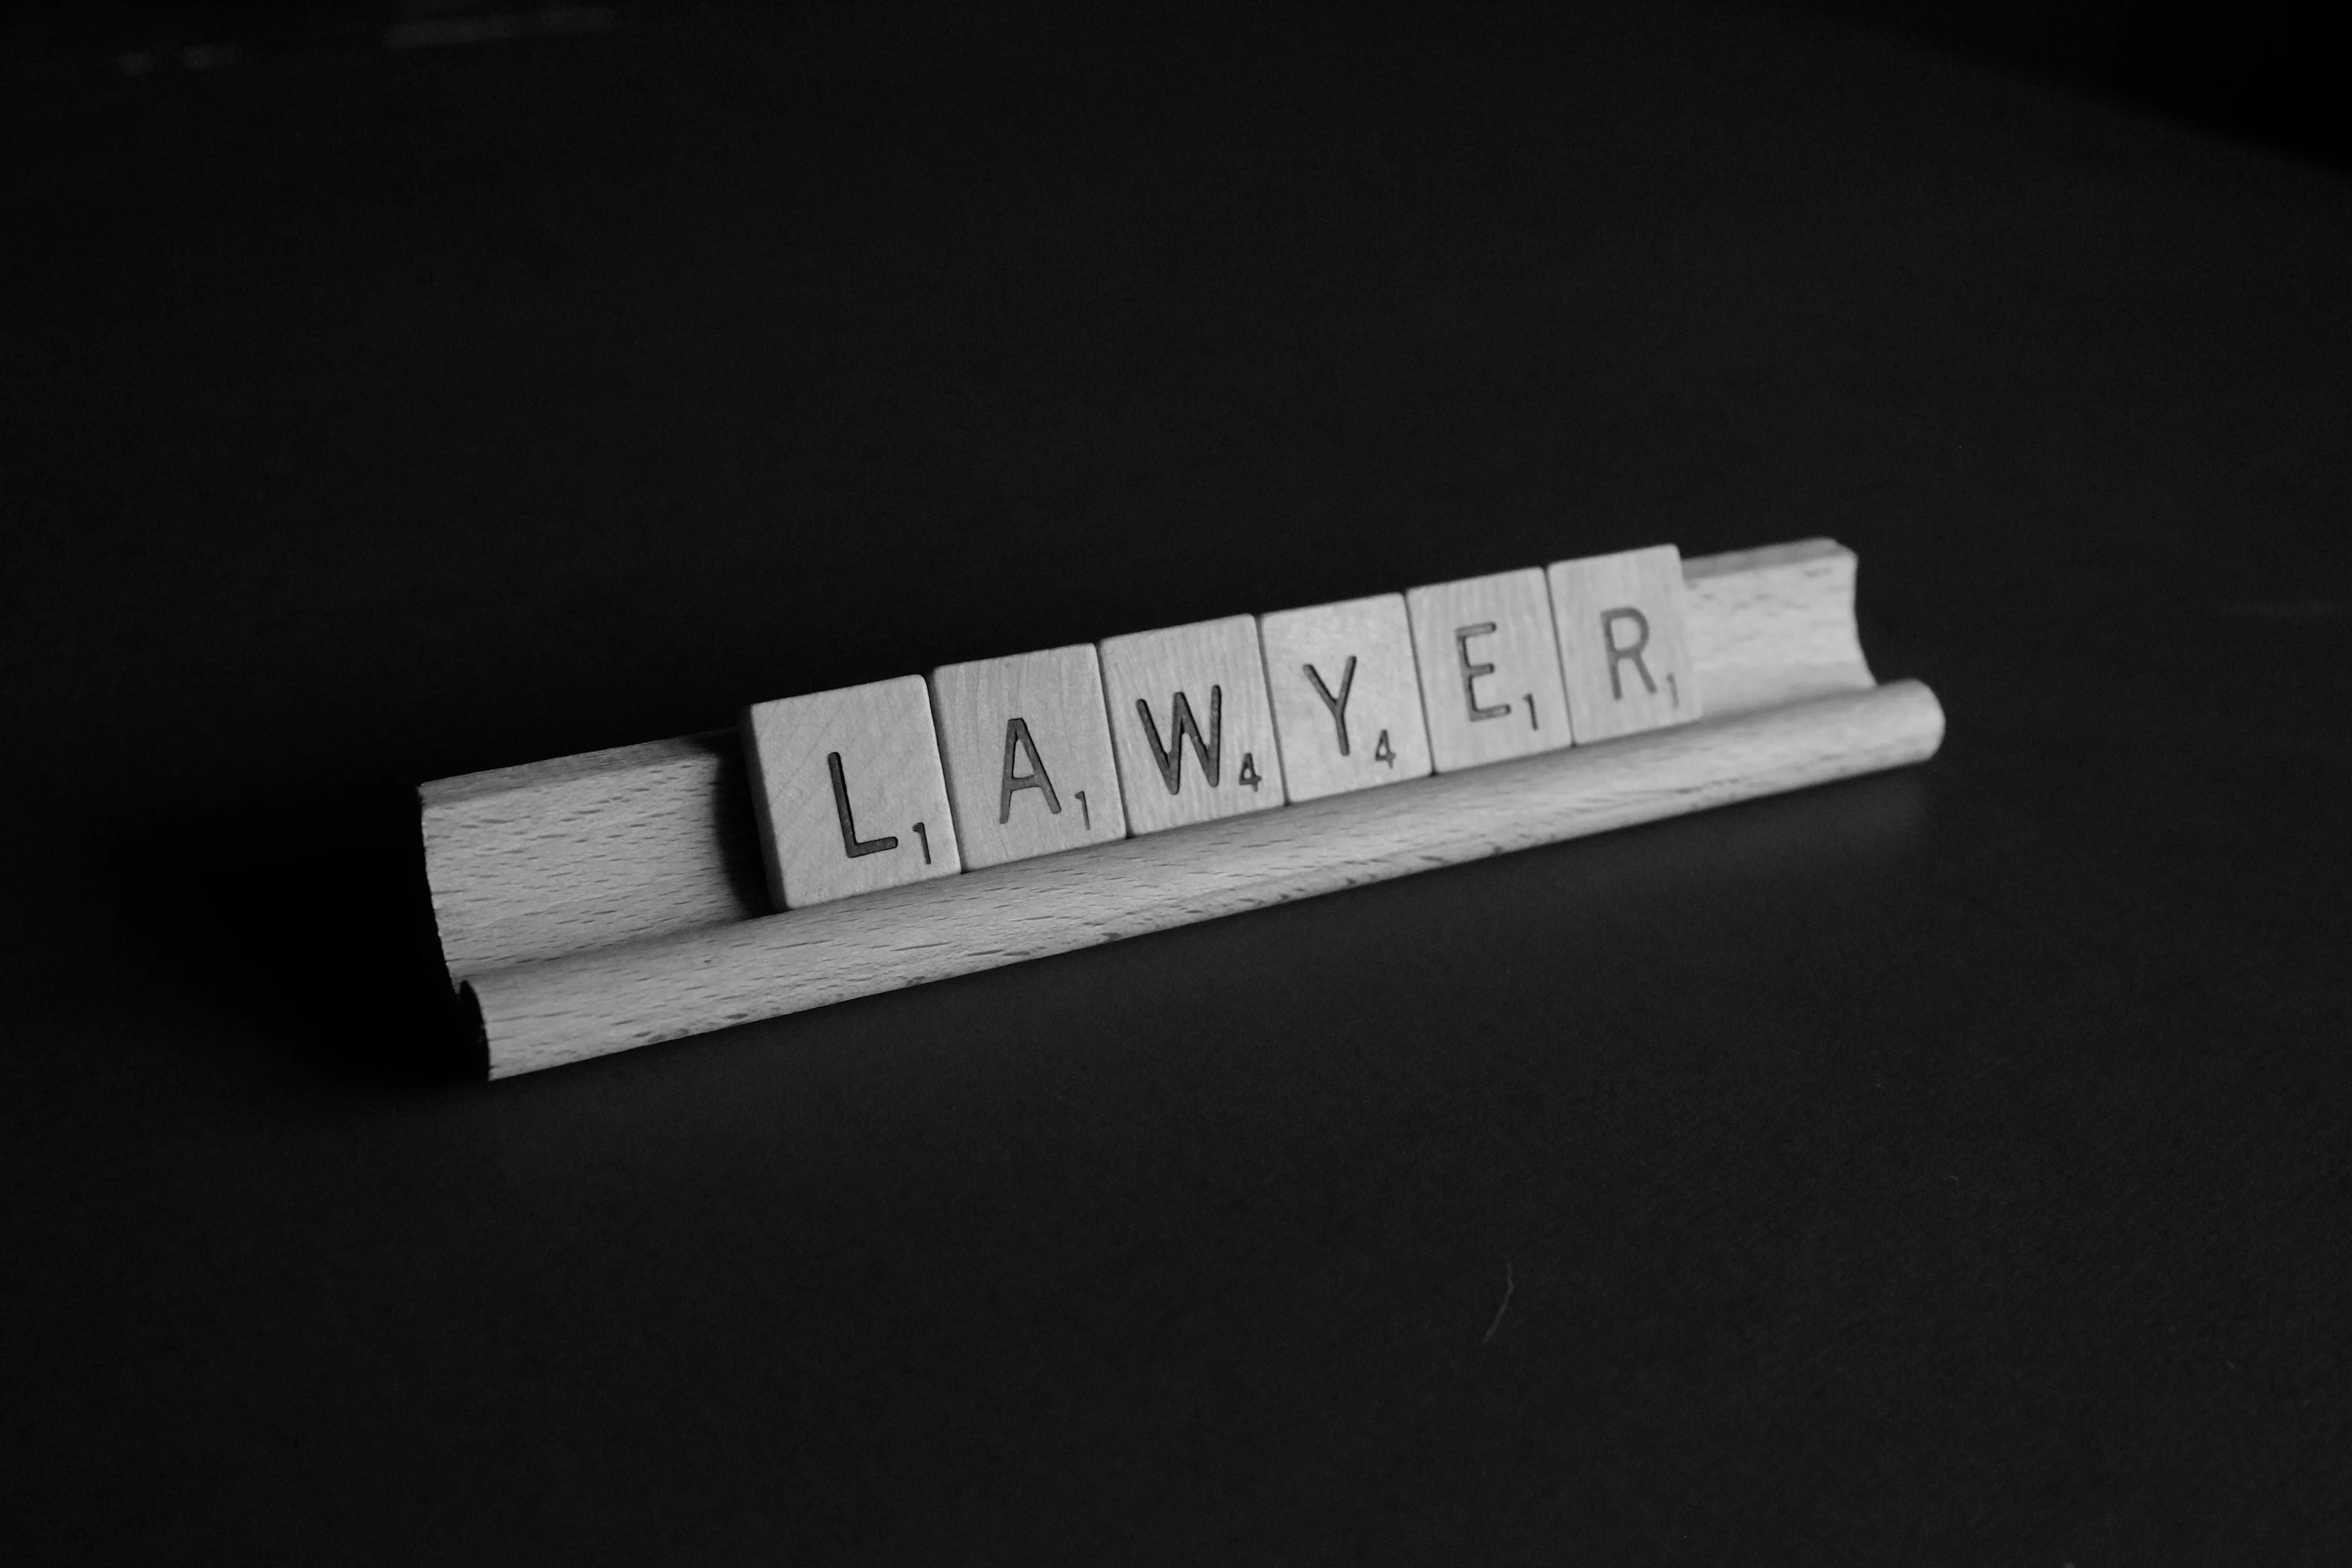 használati szerződés és az ügyvédi ellenjegyzés